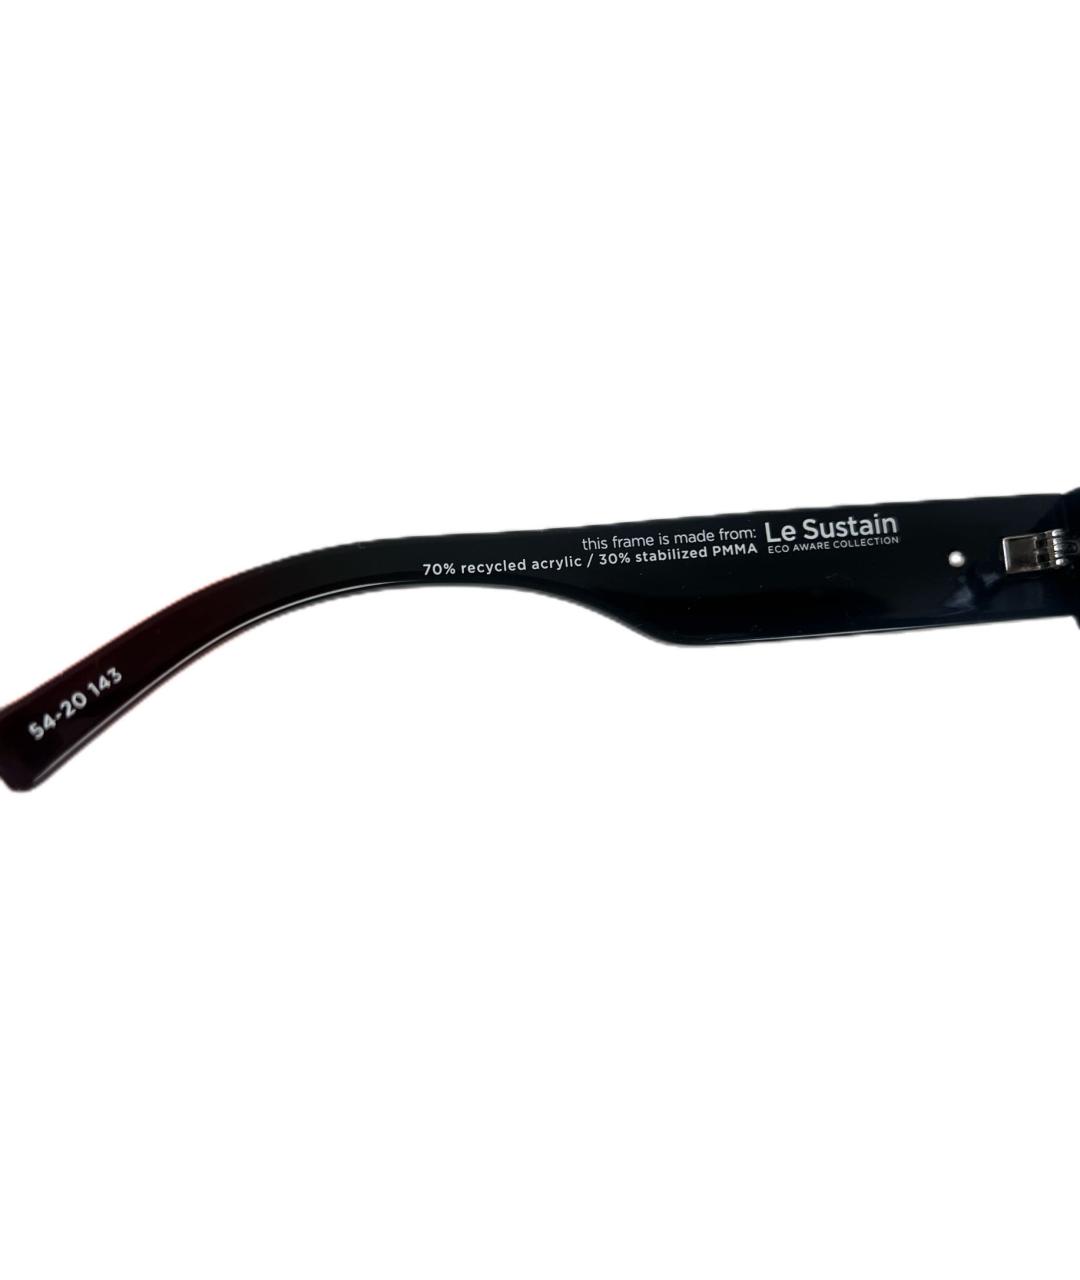 LE SPECS Черные пластиковые солнцезащитные очки, фото 4